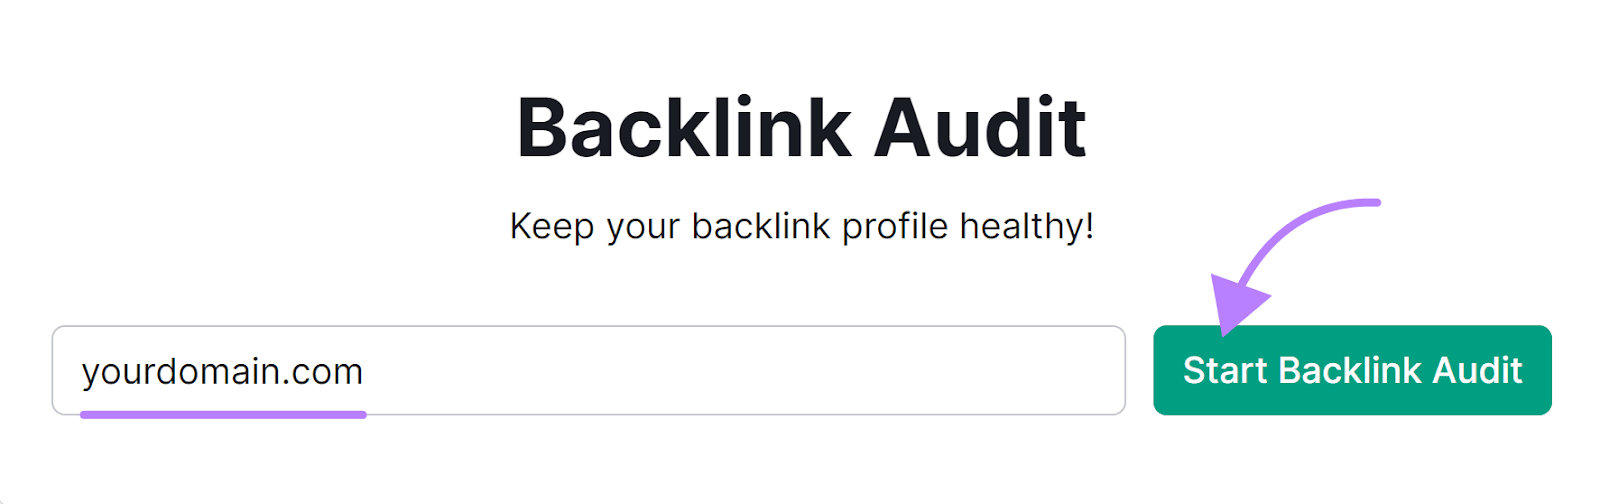 Backlink Audit hunt  for "yourdomain.com"